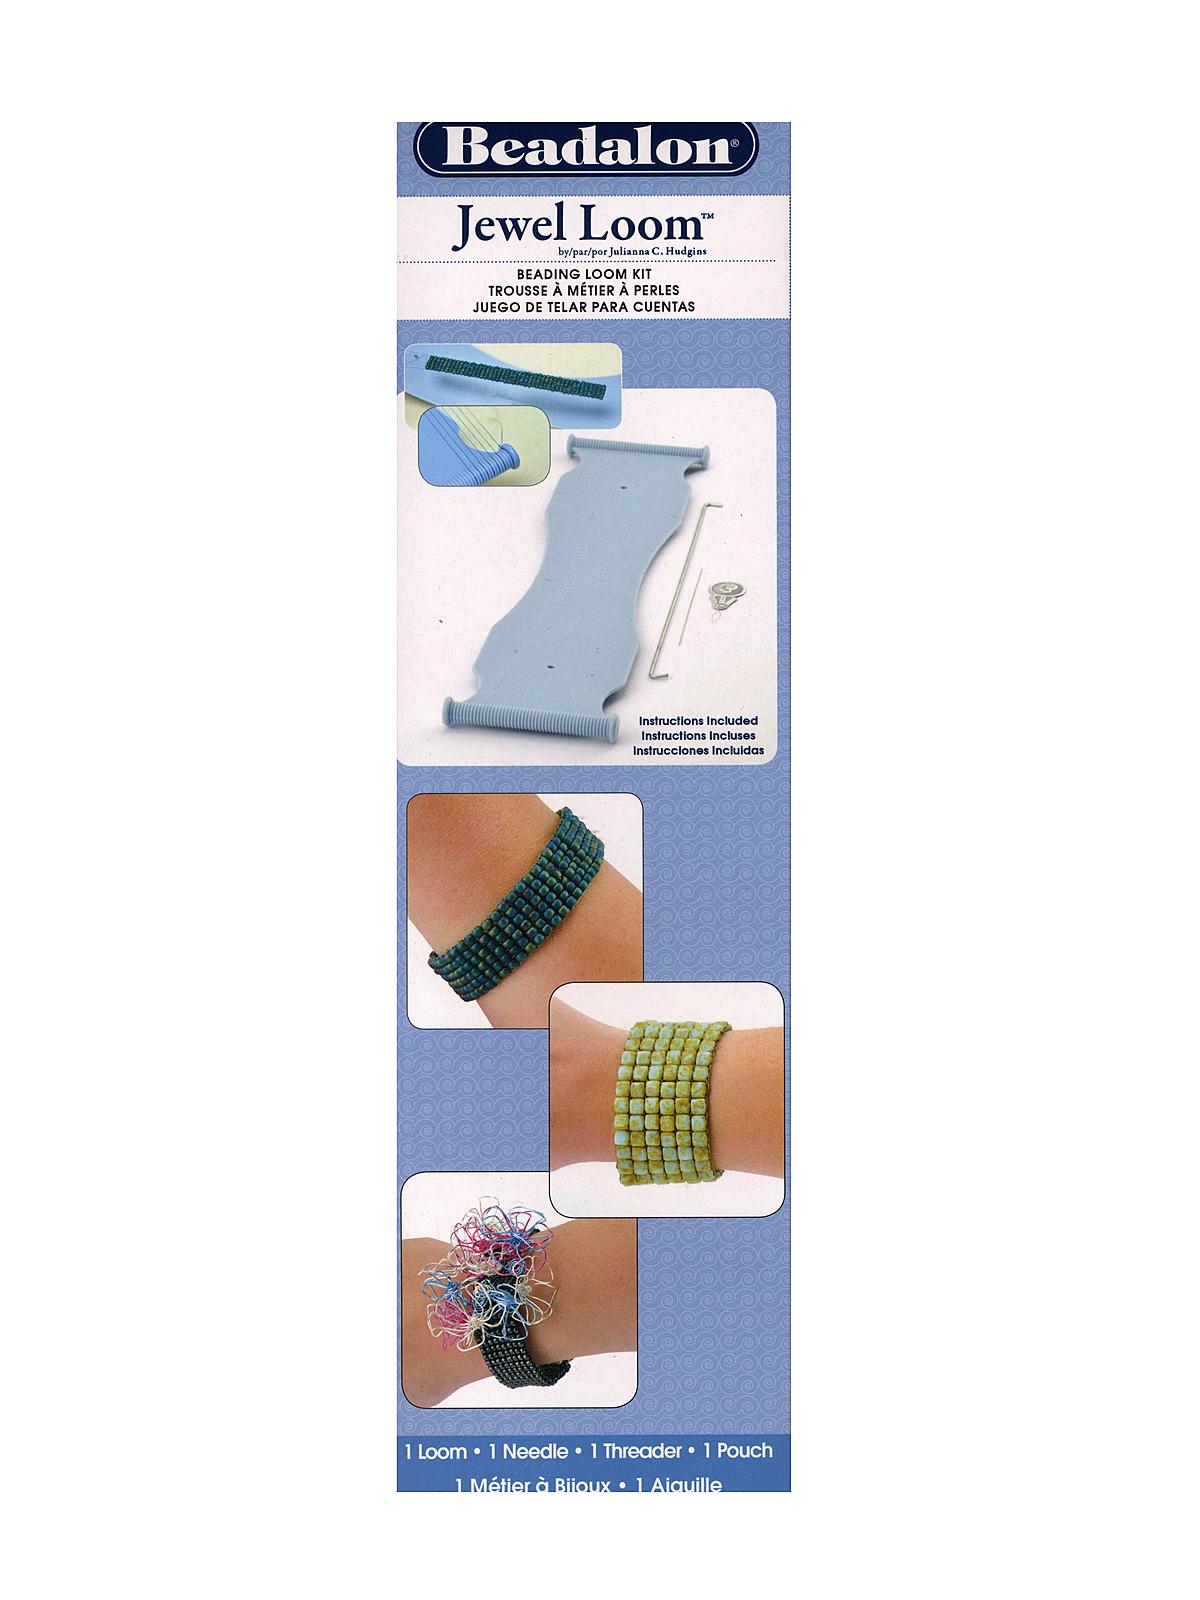 Jewel Loom Kit Each